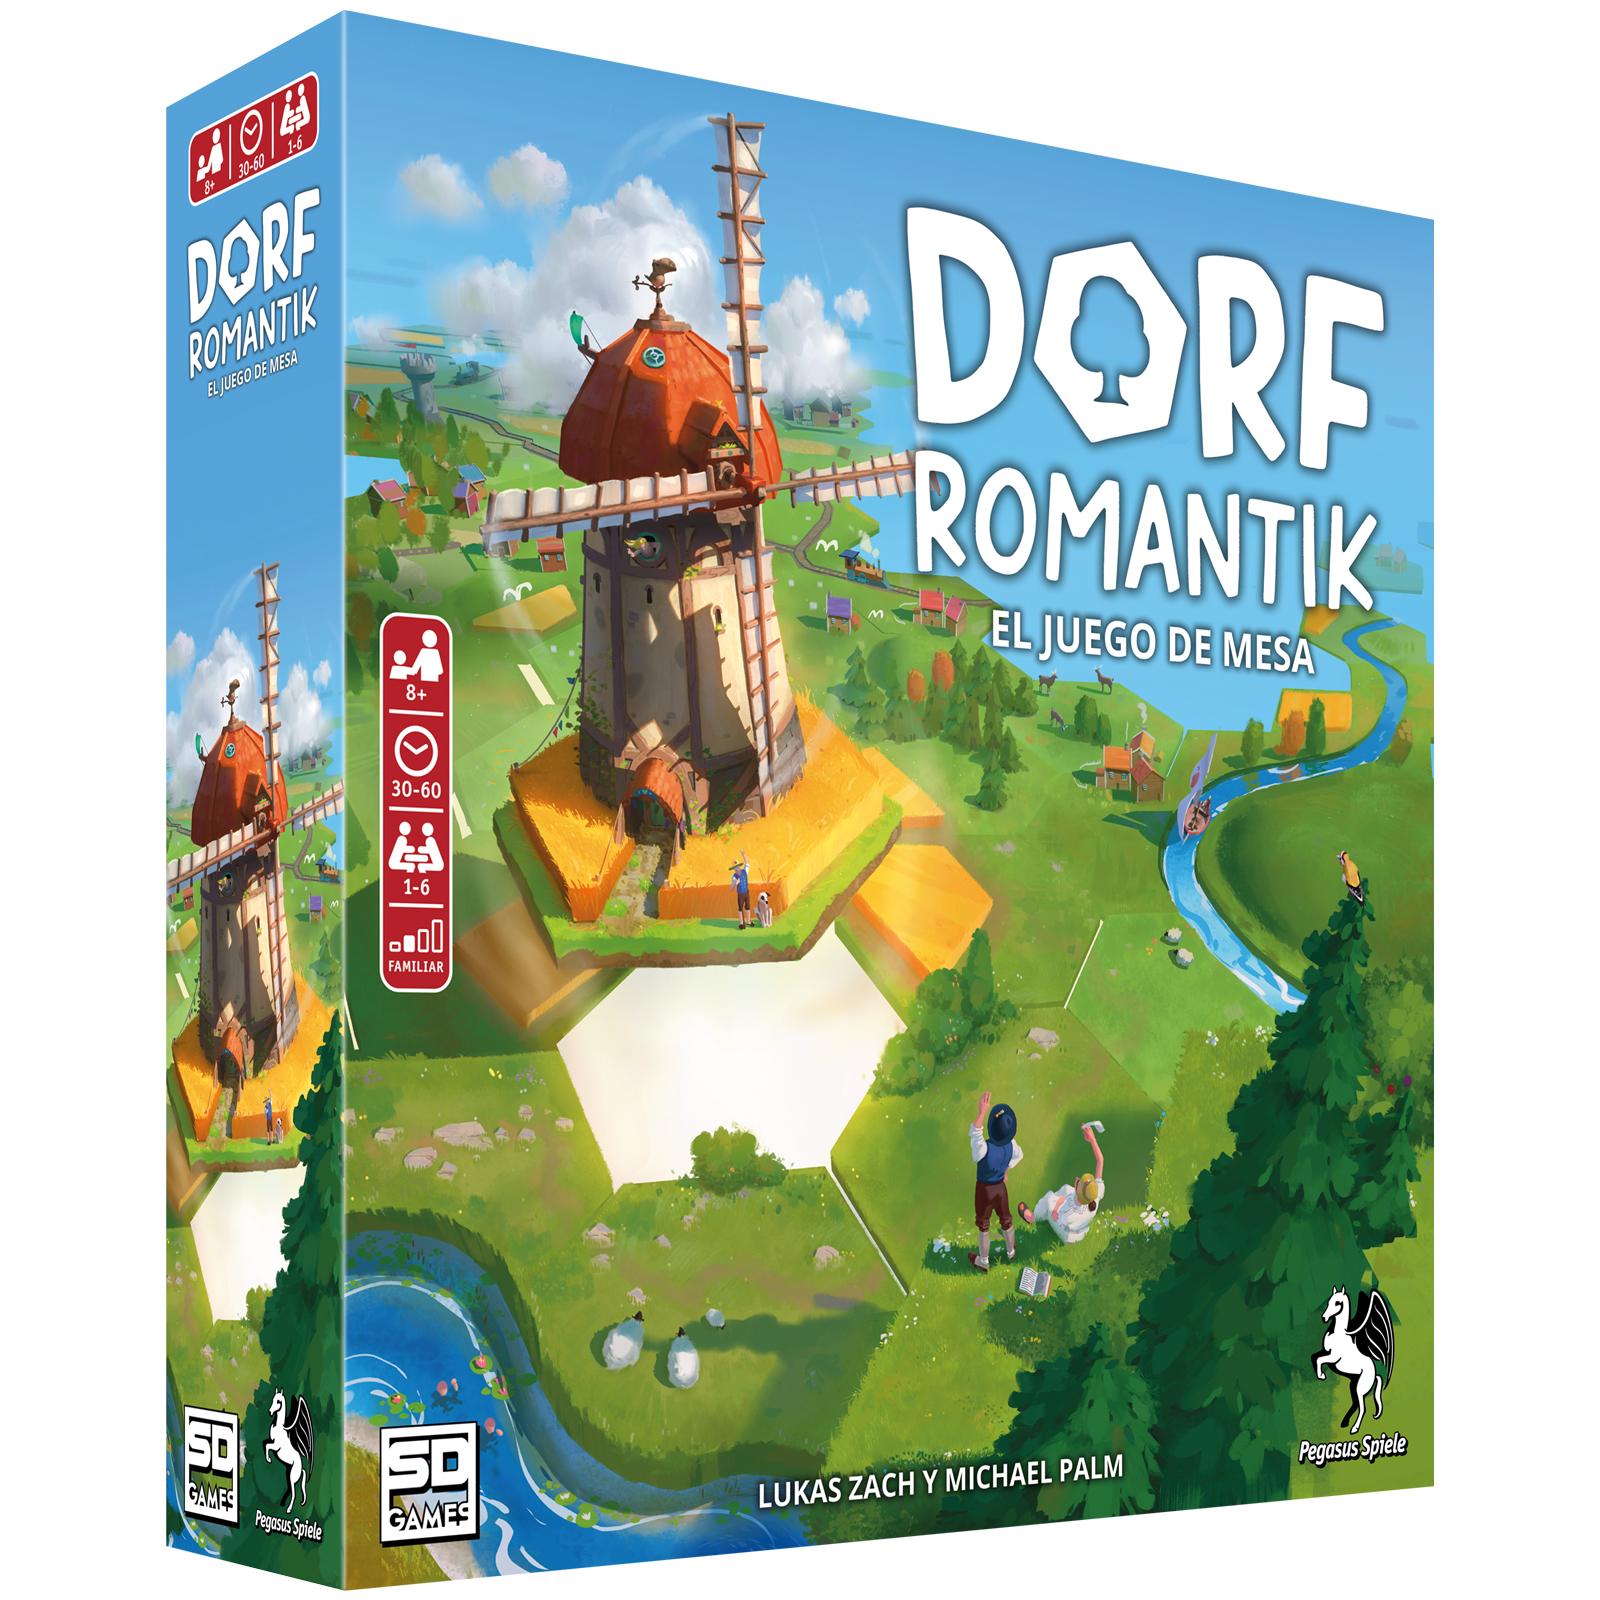 Dorfromantik llegará a España a principios de abril publicado por SD Games